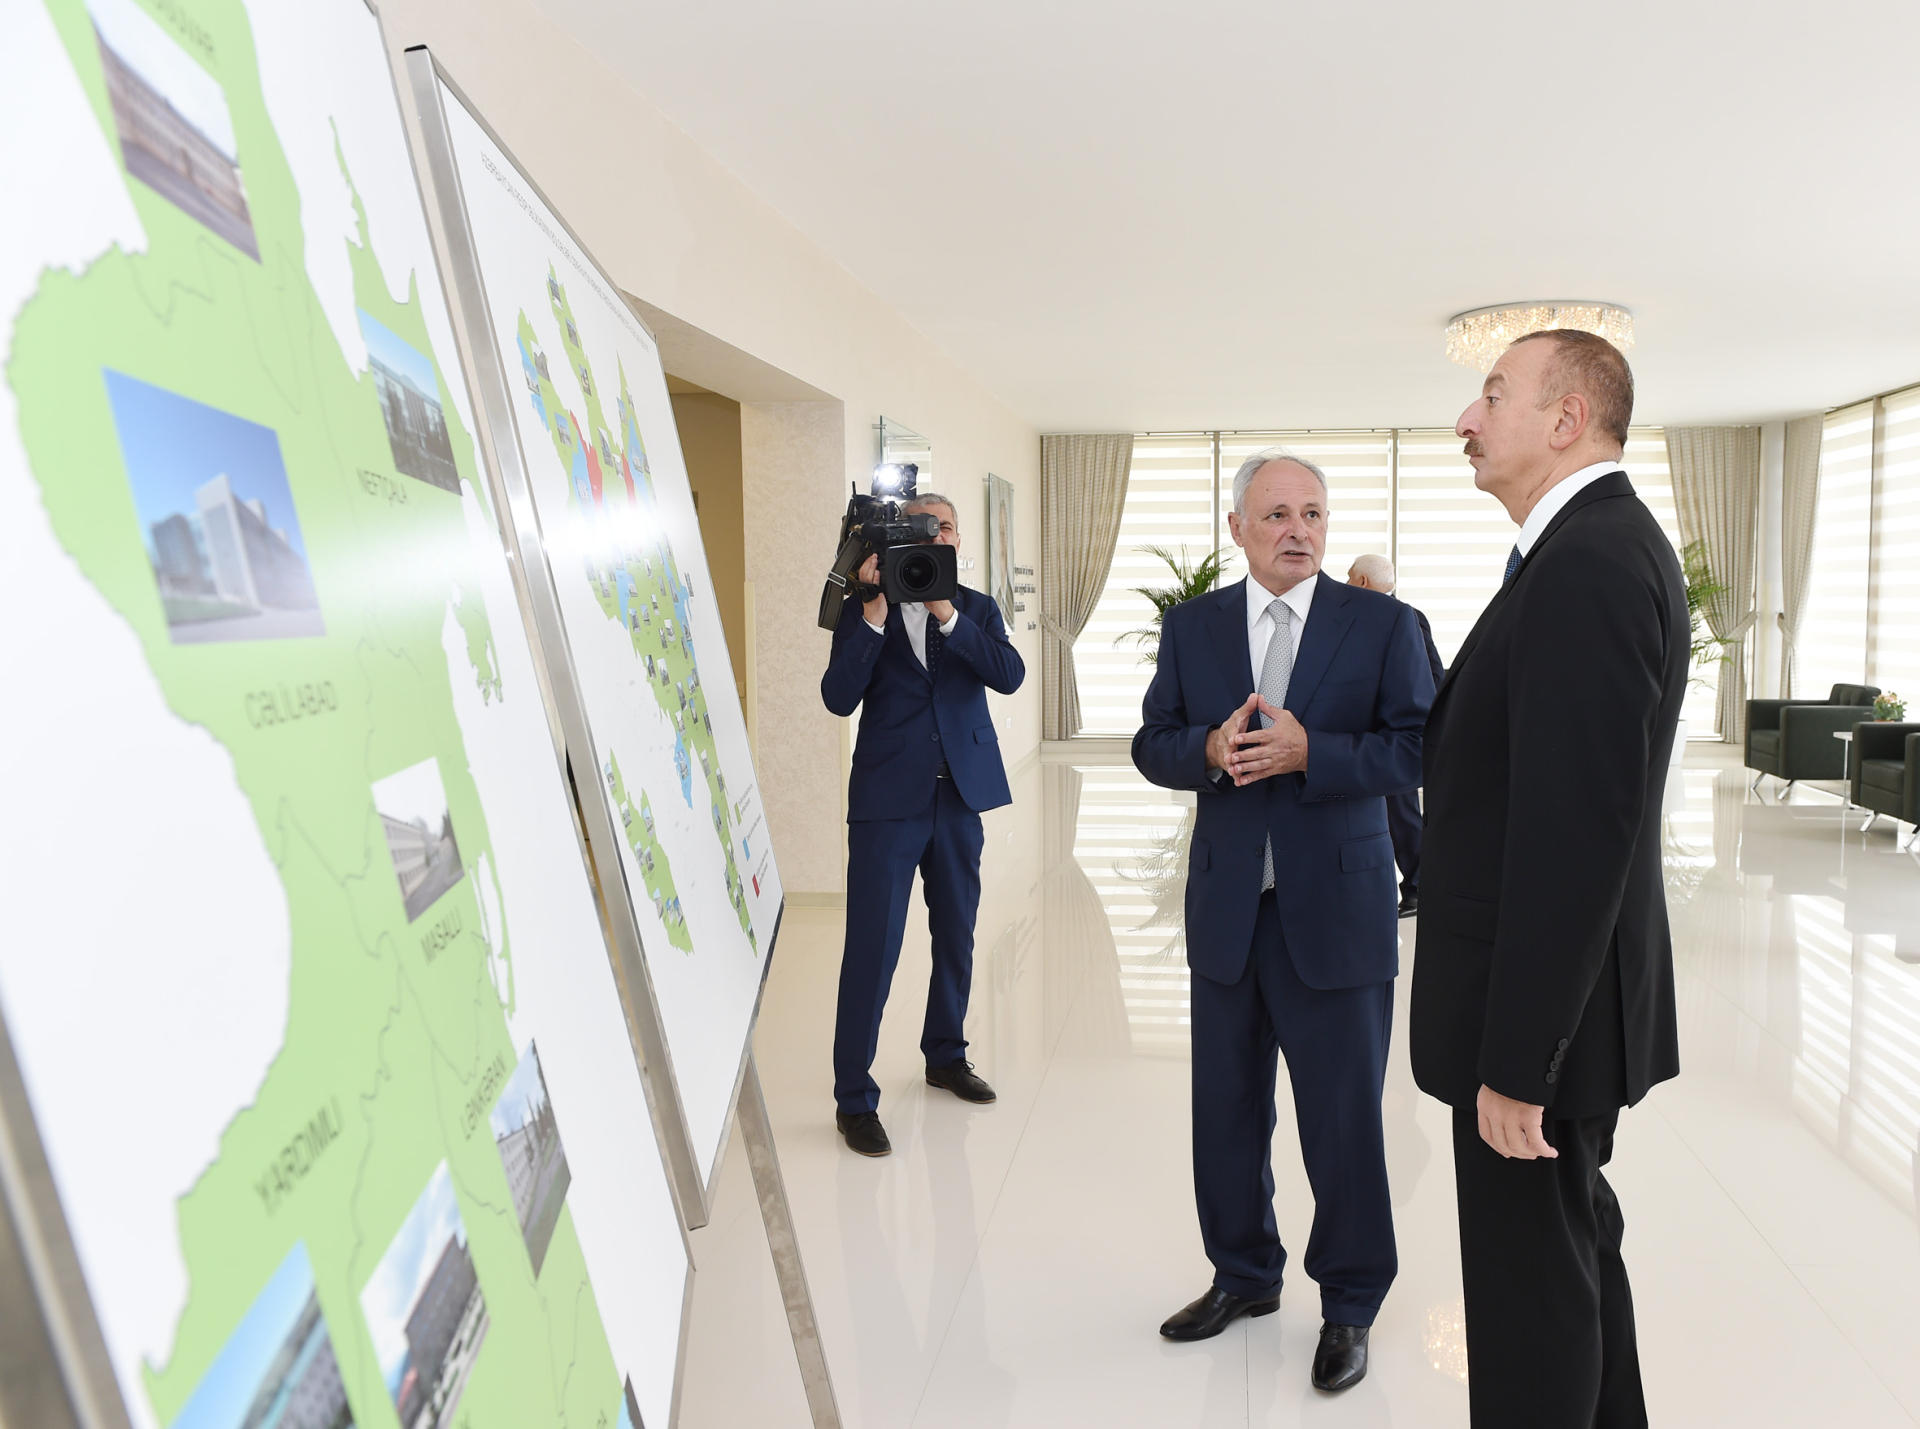 Президент Ильхам Алиев ознакомился с условиями в центральной районной больнице Нефтчалы после реконструкции (ФОТО)